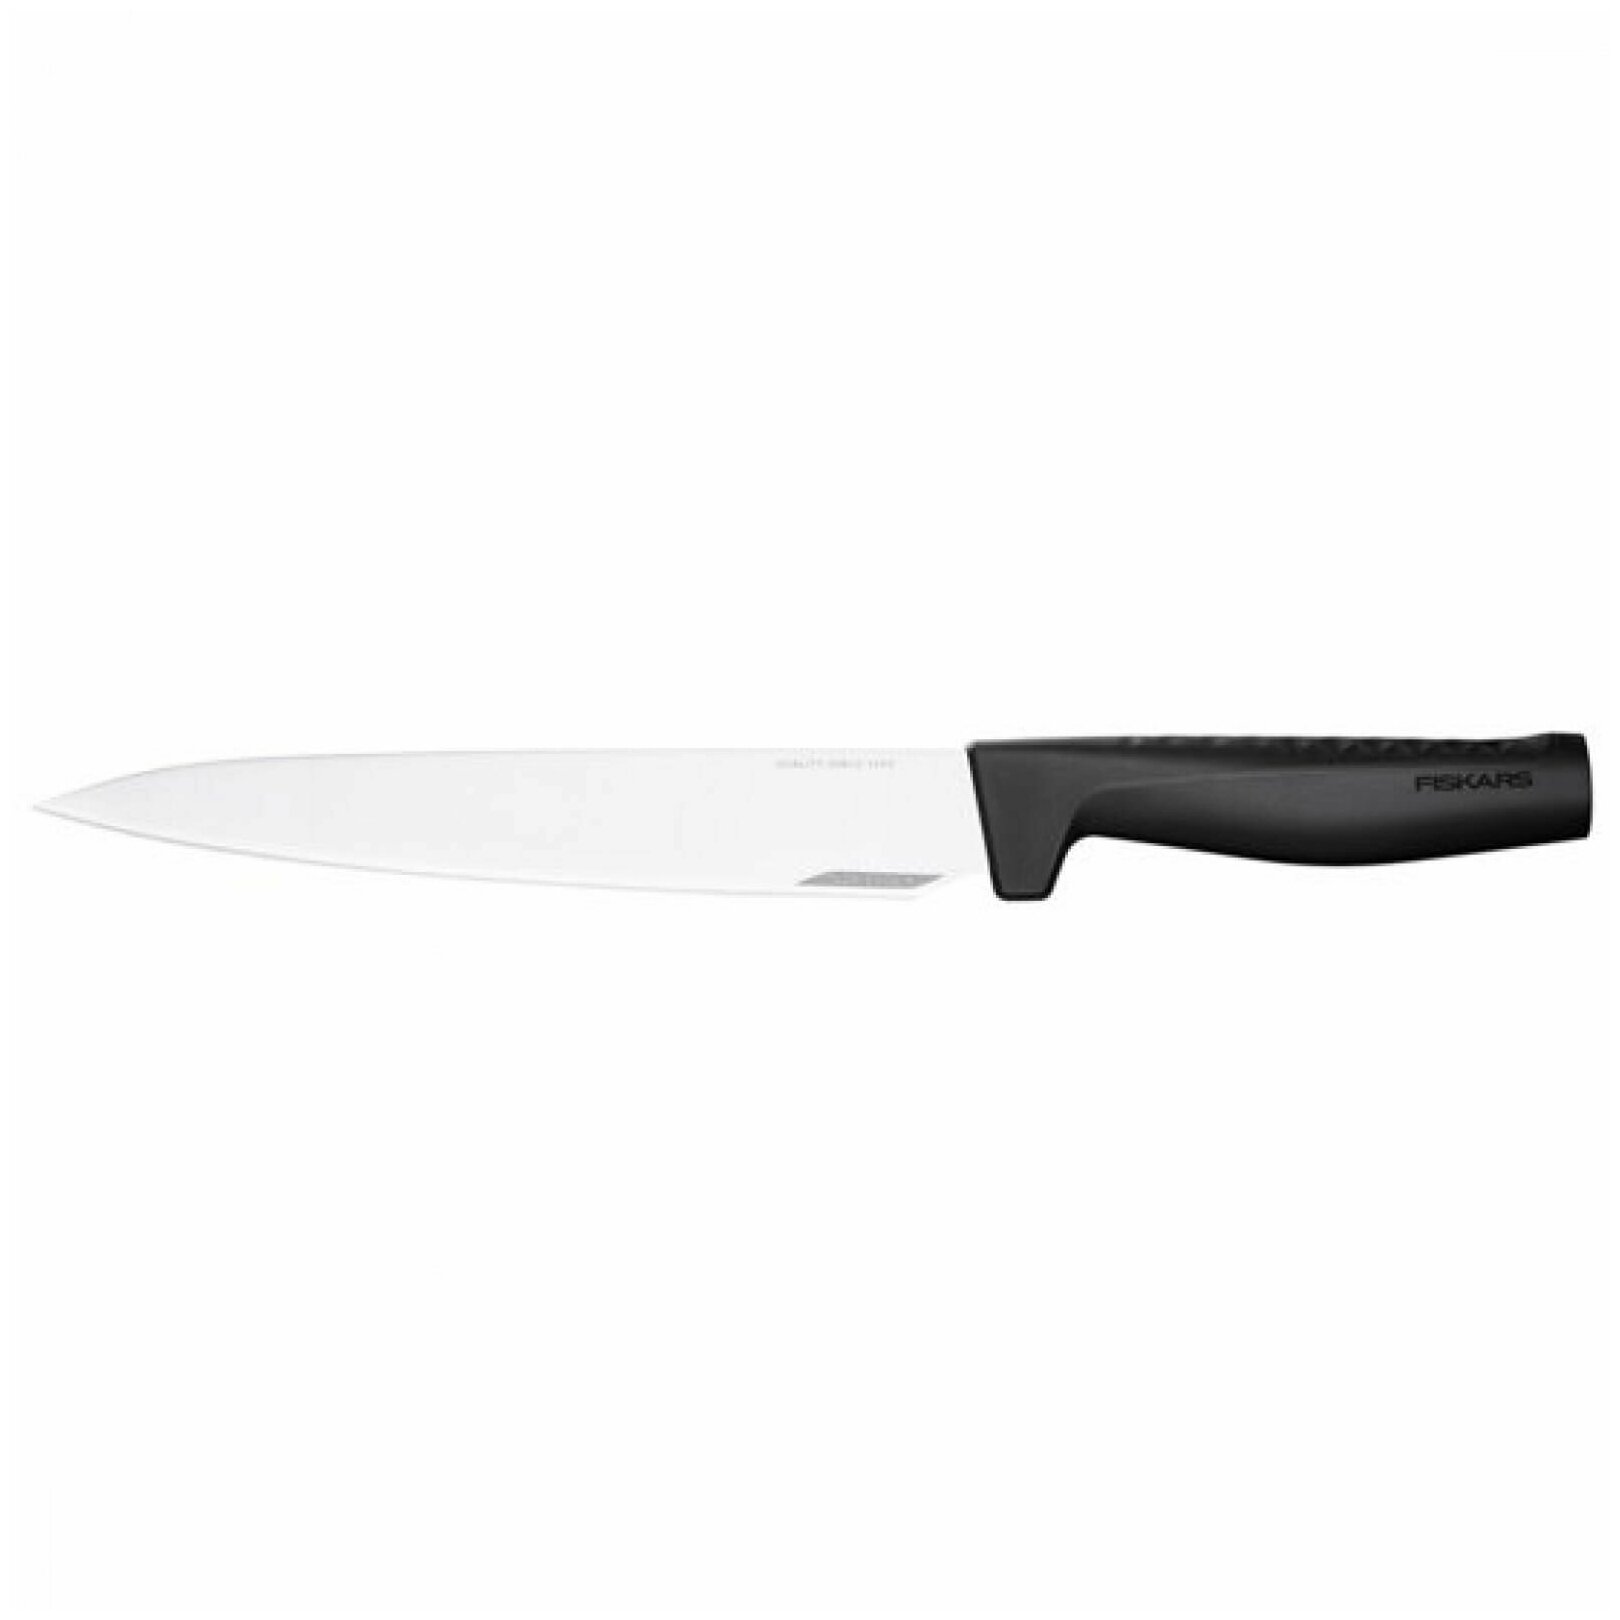 Разделочный нож Fiskars Hard Edge 1051760 подарок на день рождения мужчине, любимому, папе, дедушке, парню